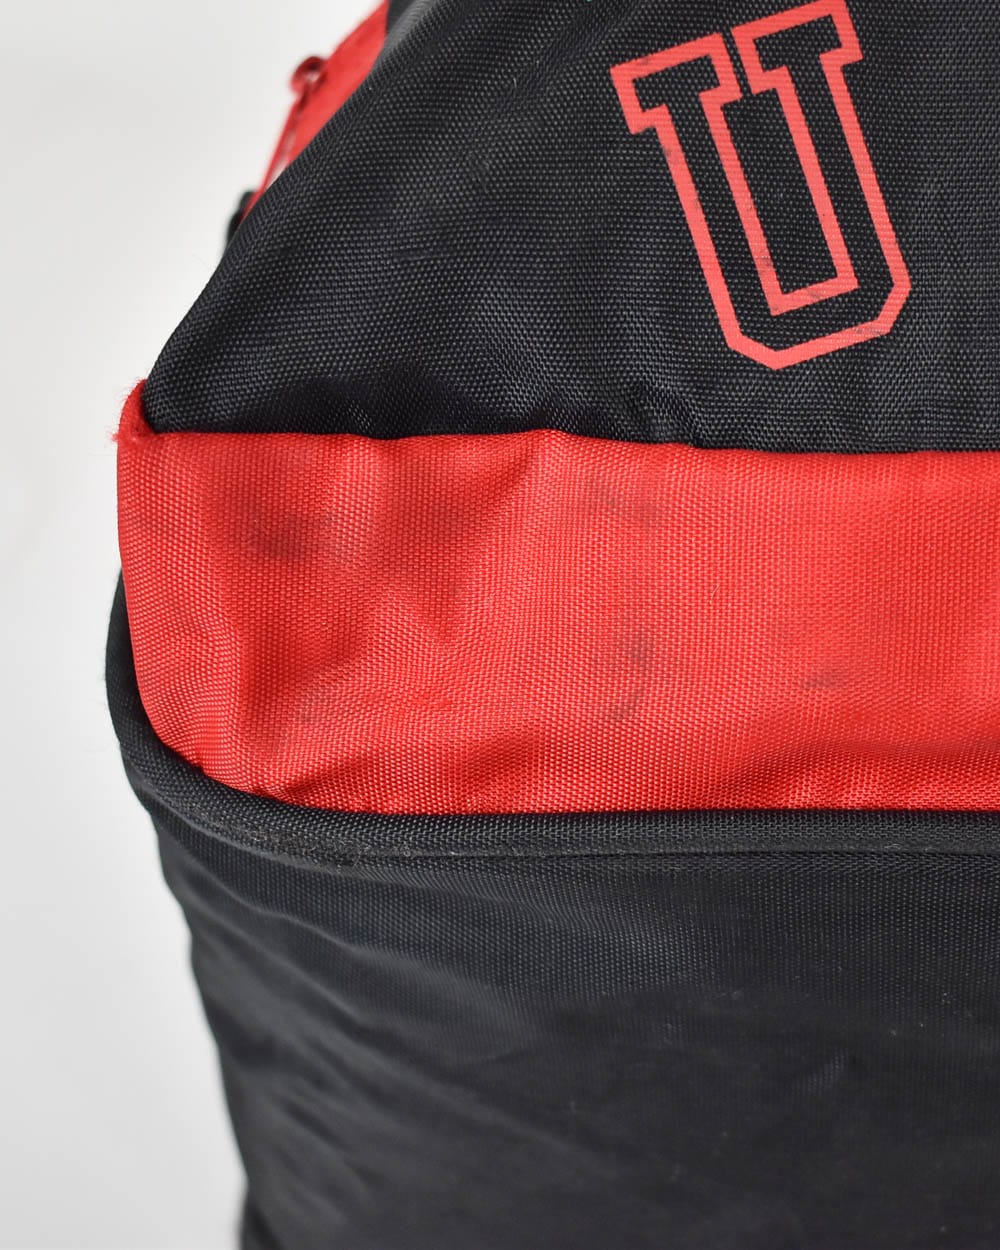  Nike USA Backpack